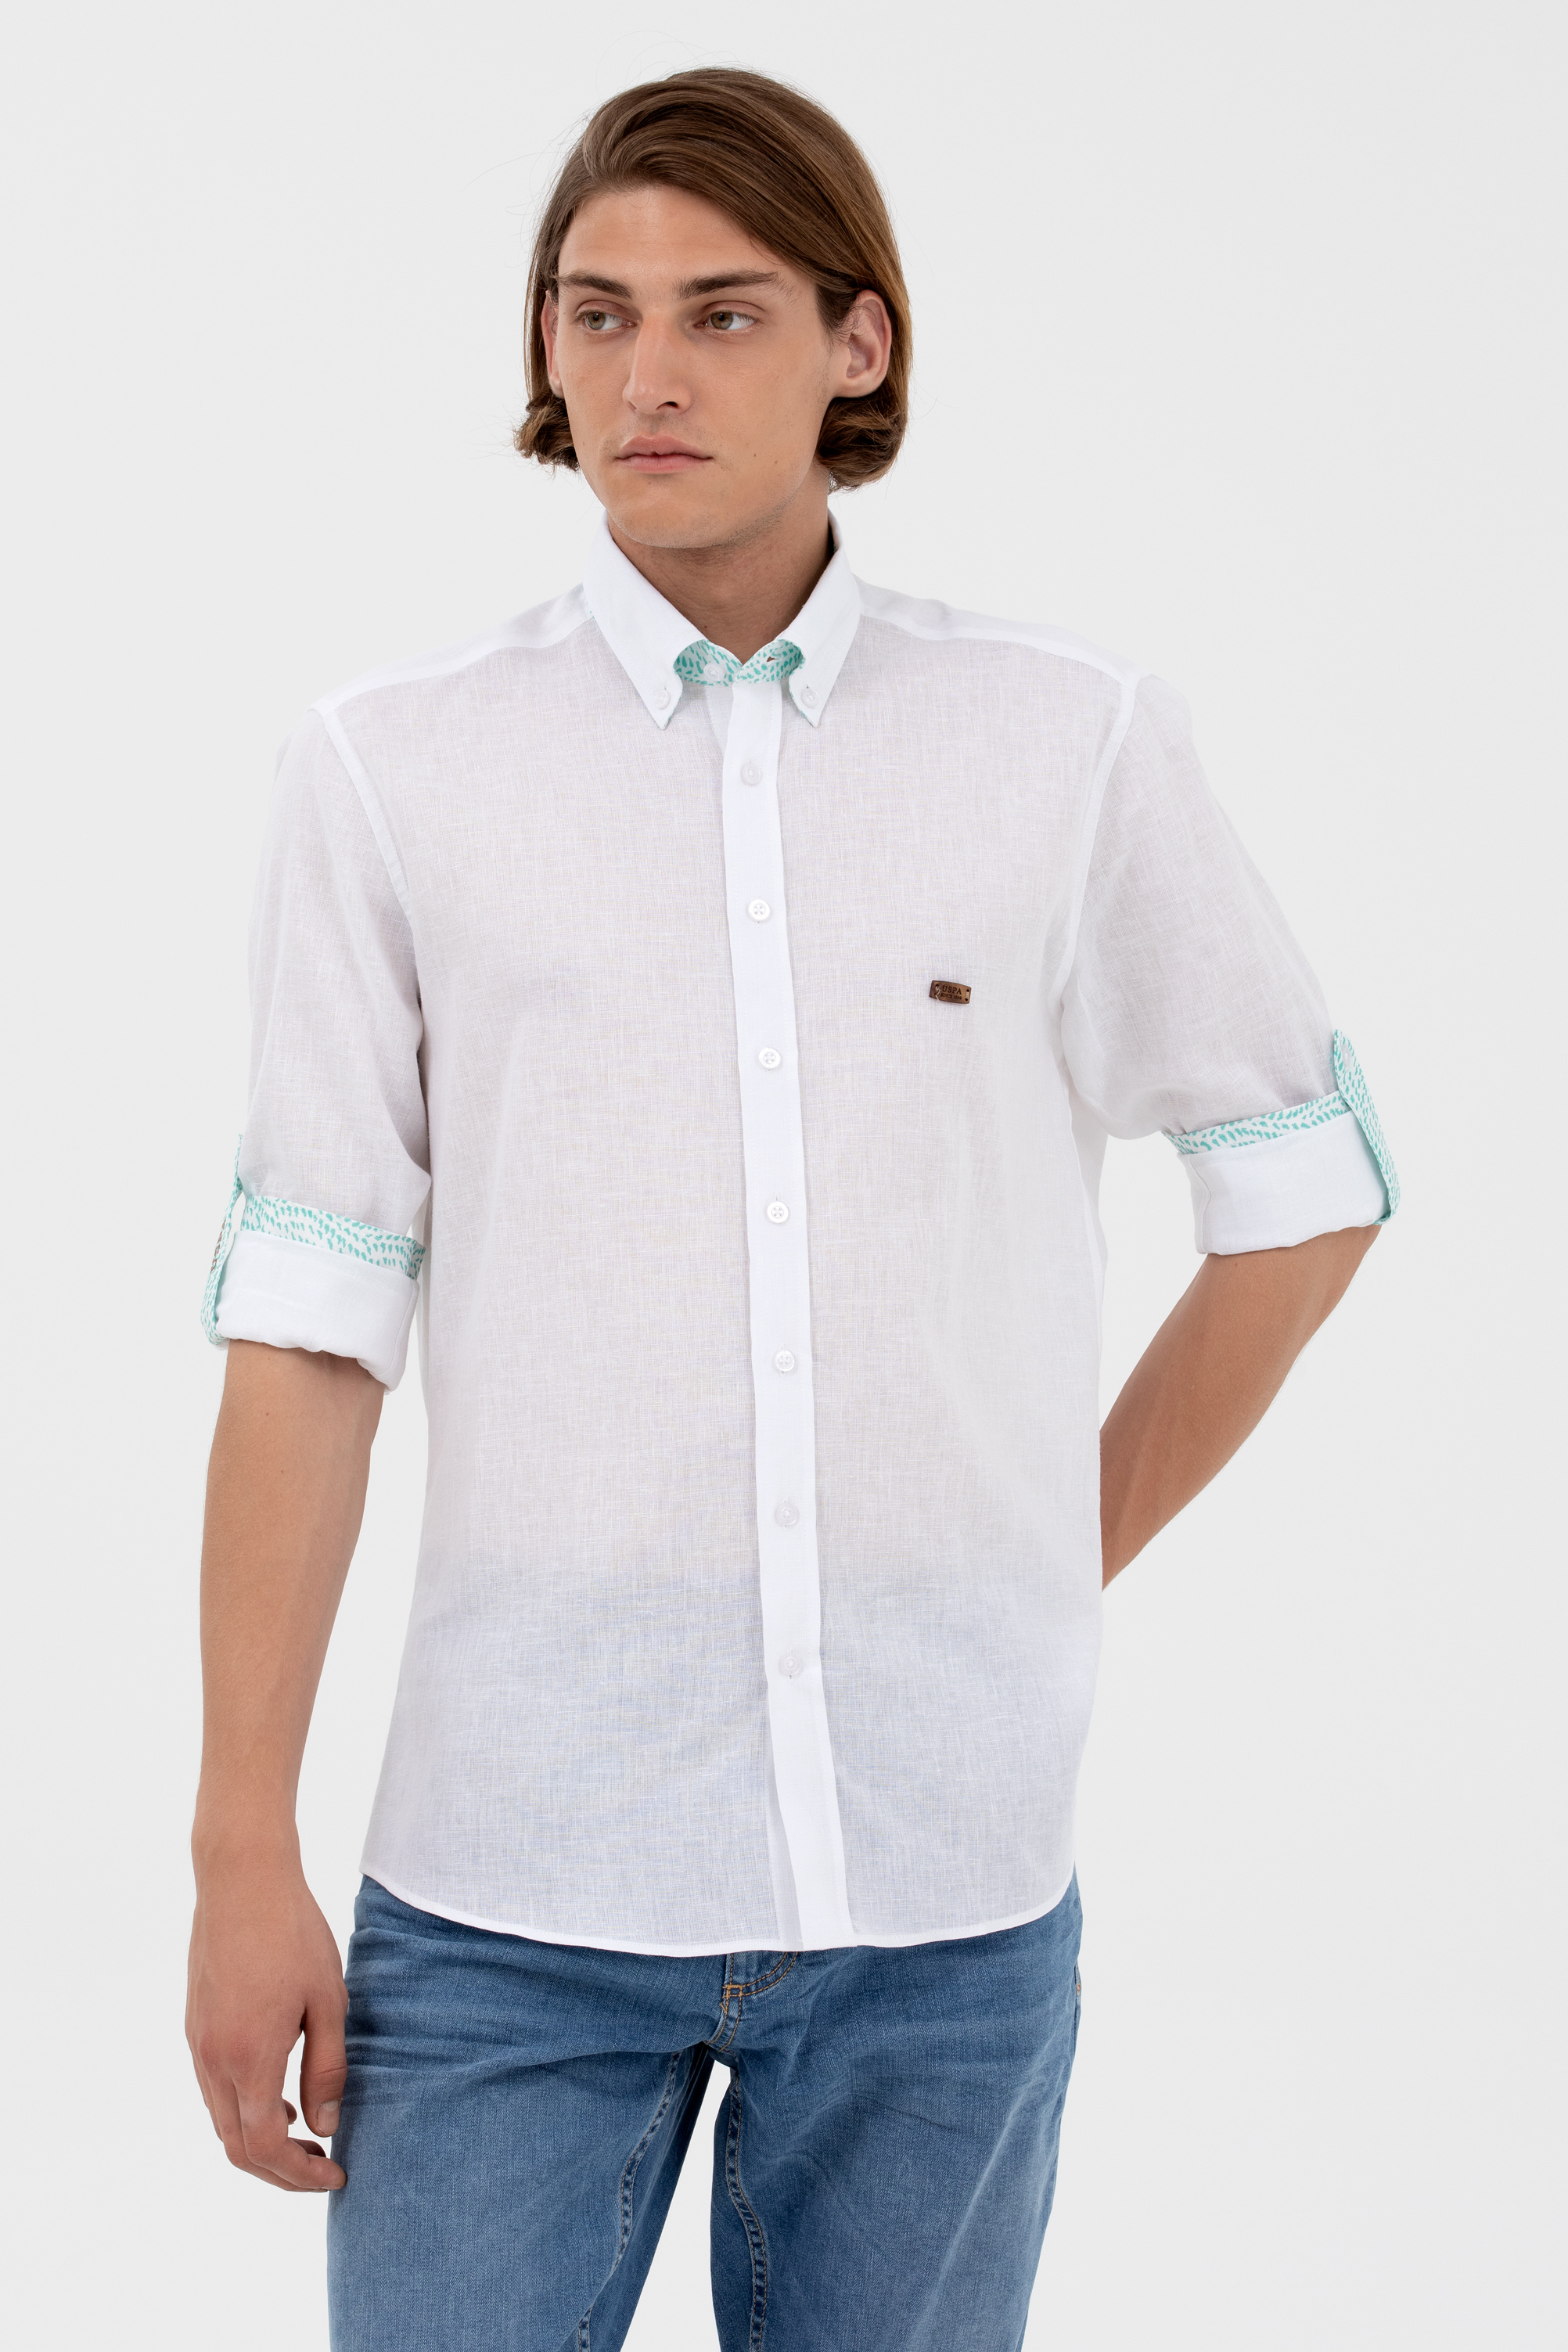 Рубашка мужская U.S. POLO Assn. G081SZ004-000-1582640-COMOS белая XL